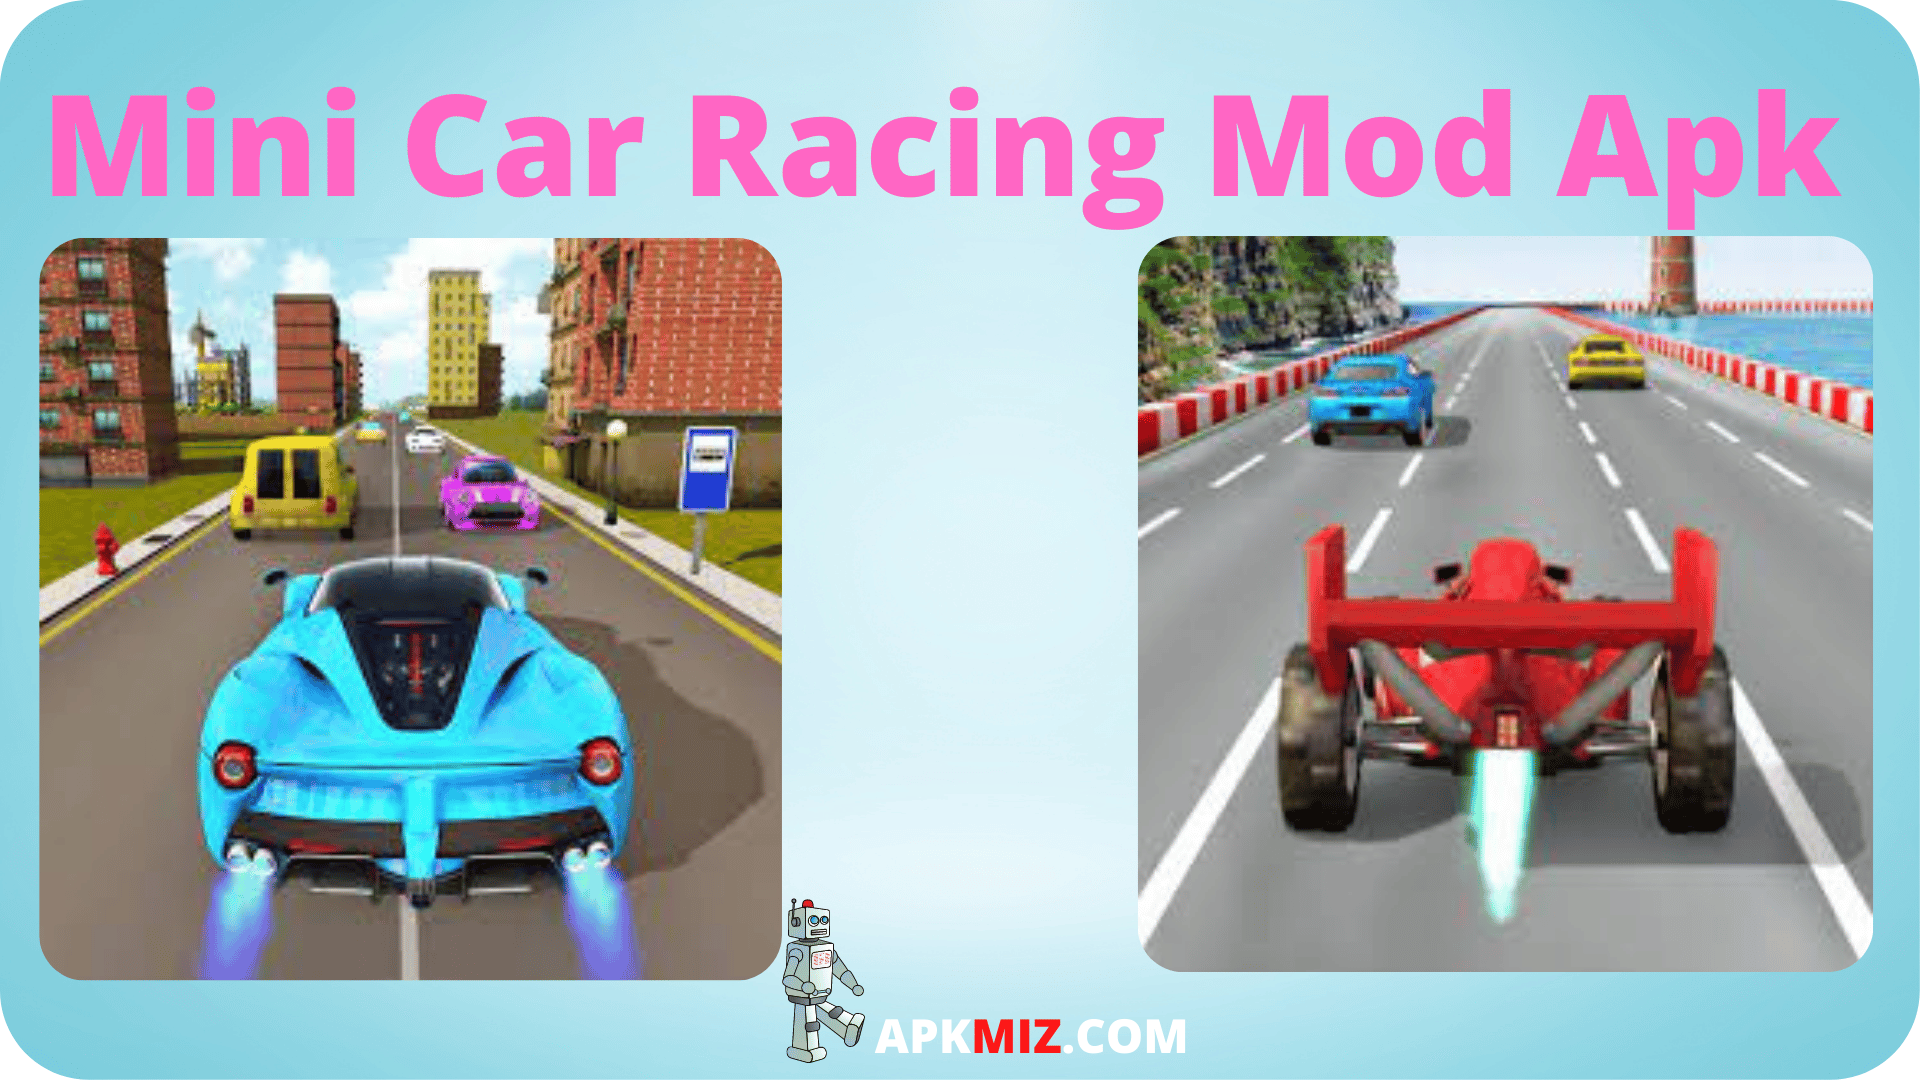 Mini Car Racing Mod Apk